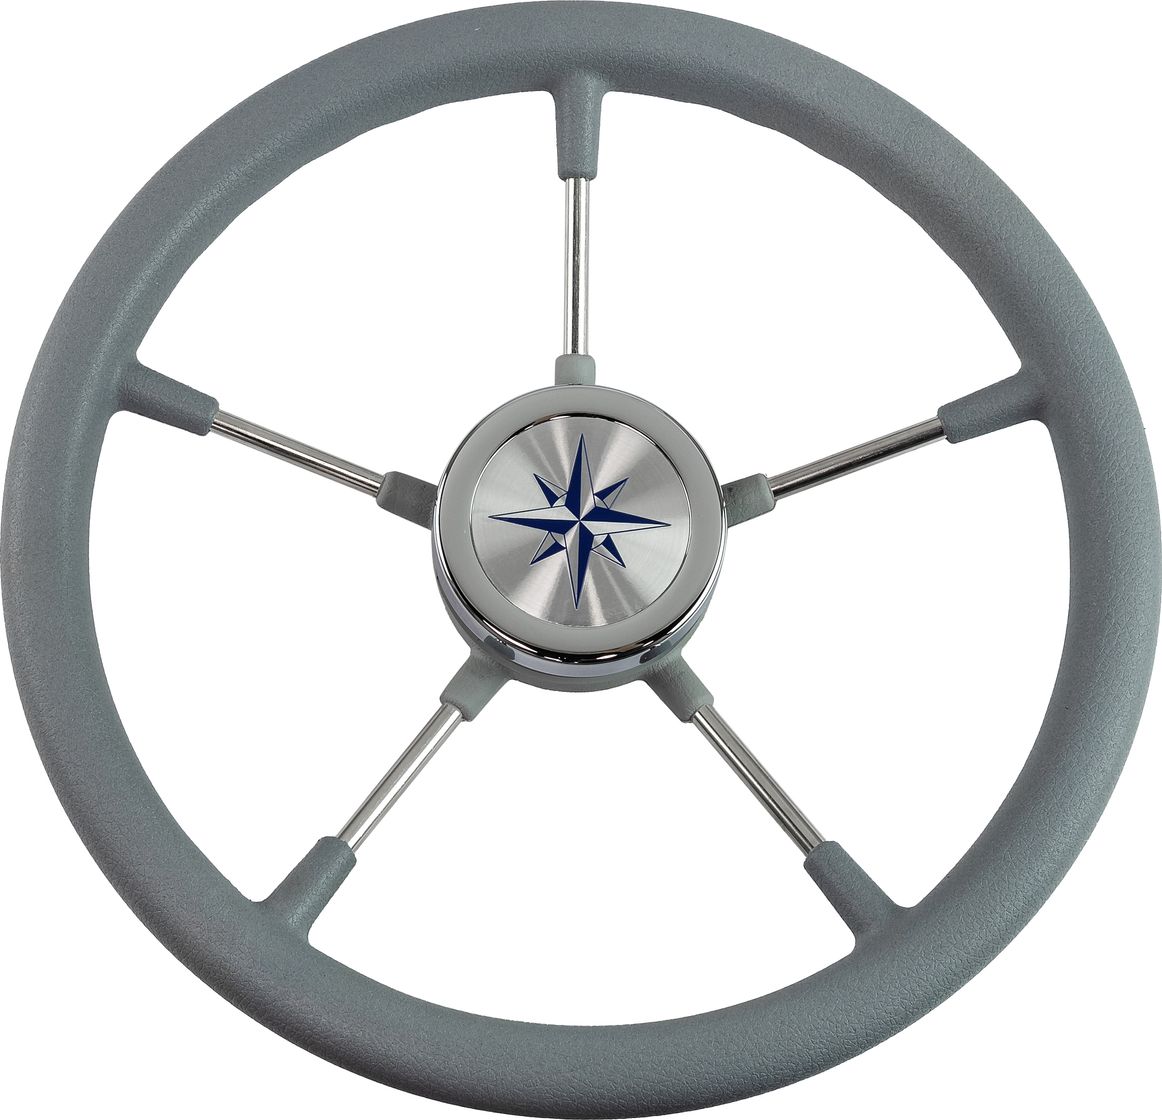 Рулевое колесо RIVA RSL обод серый, спицы серебряные д. 360 мм VN735022-03 рулевое колесо riva rsl обод серый спицы серебряные д 360 мм vn735022 03